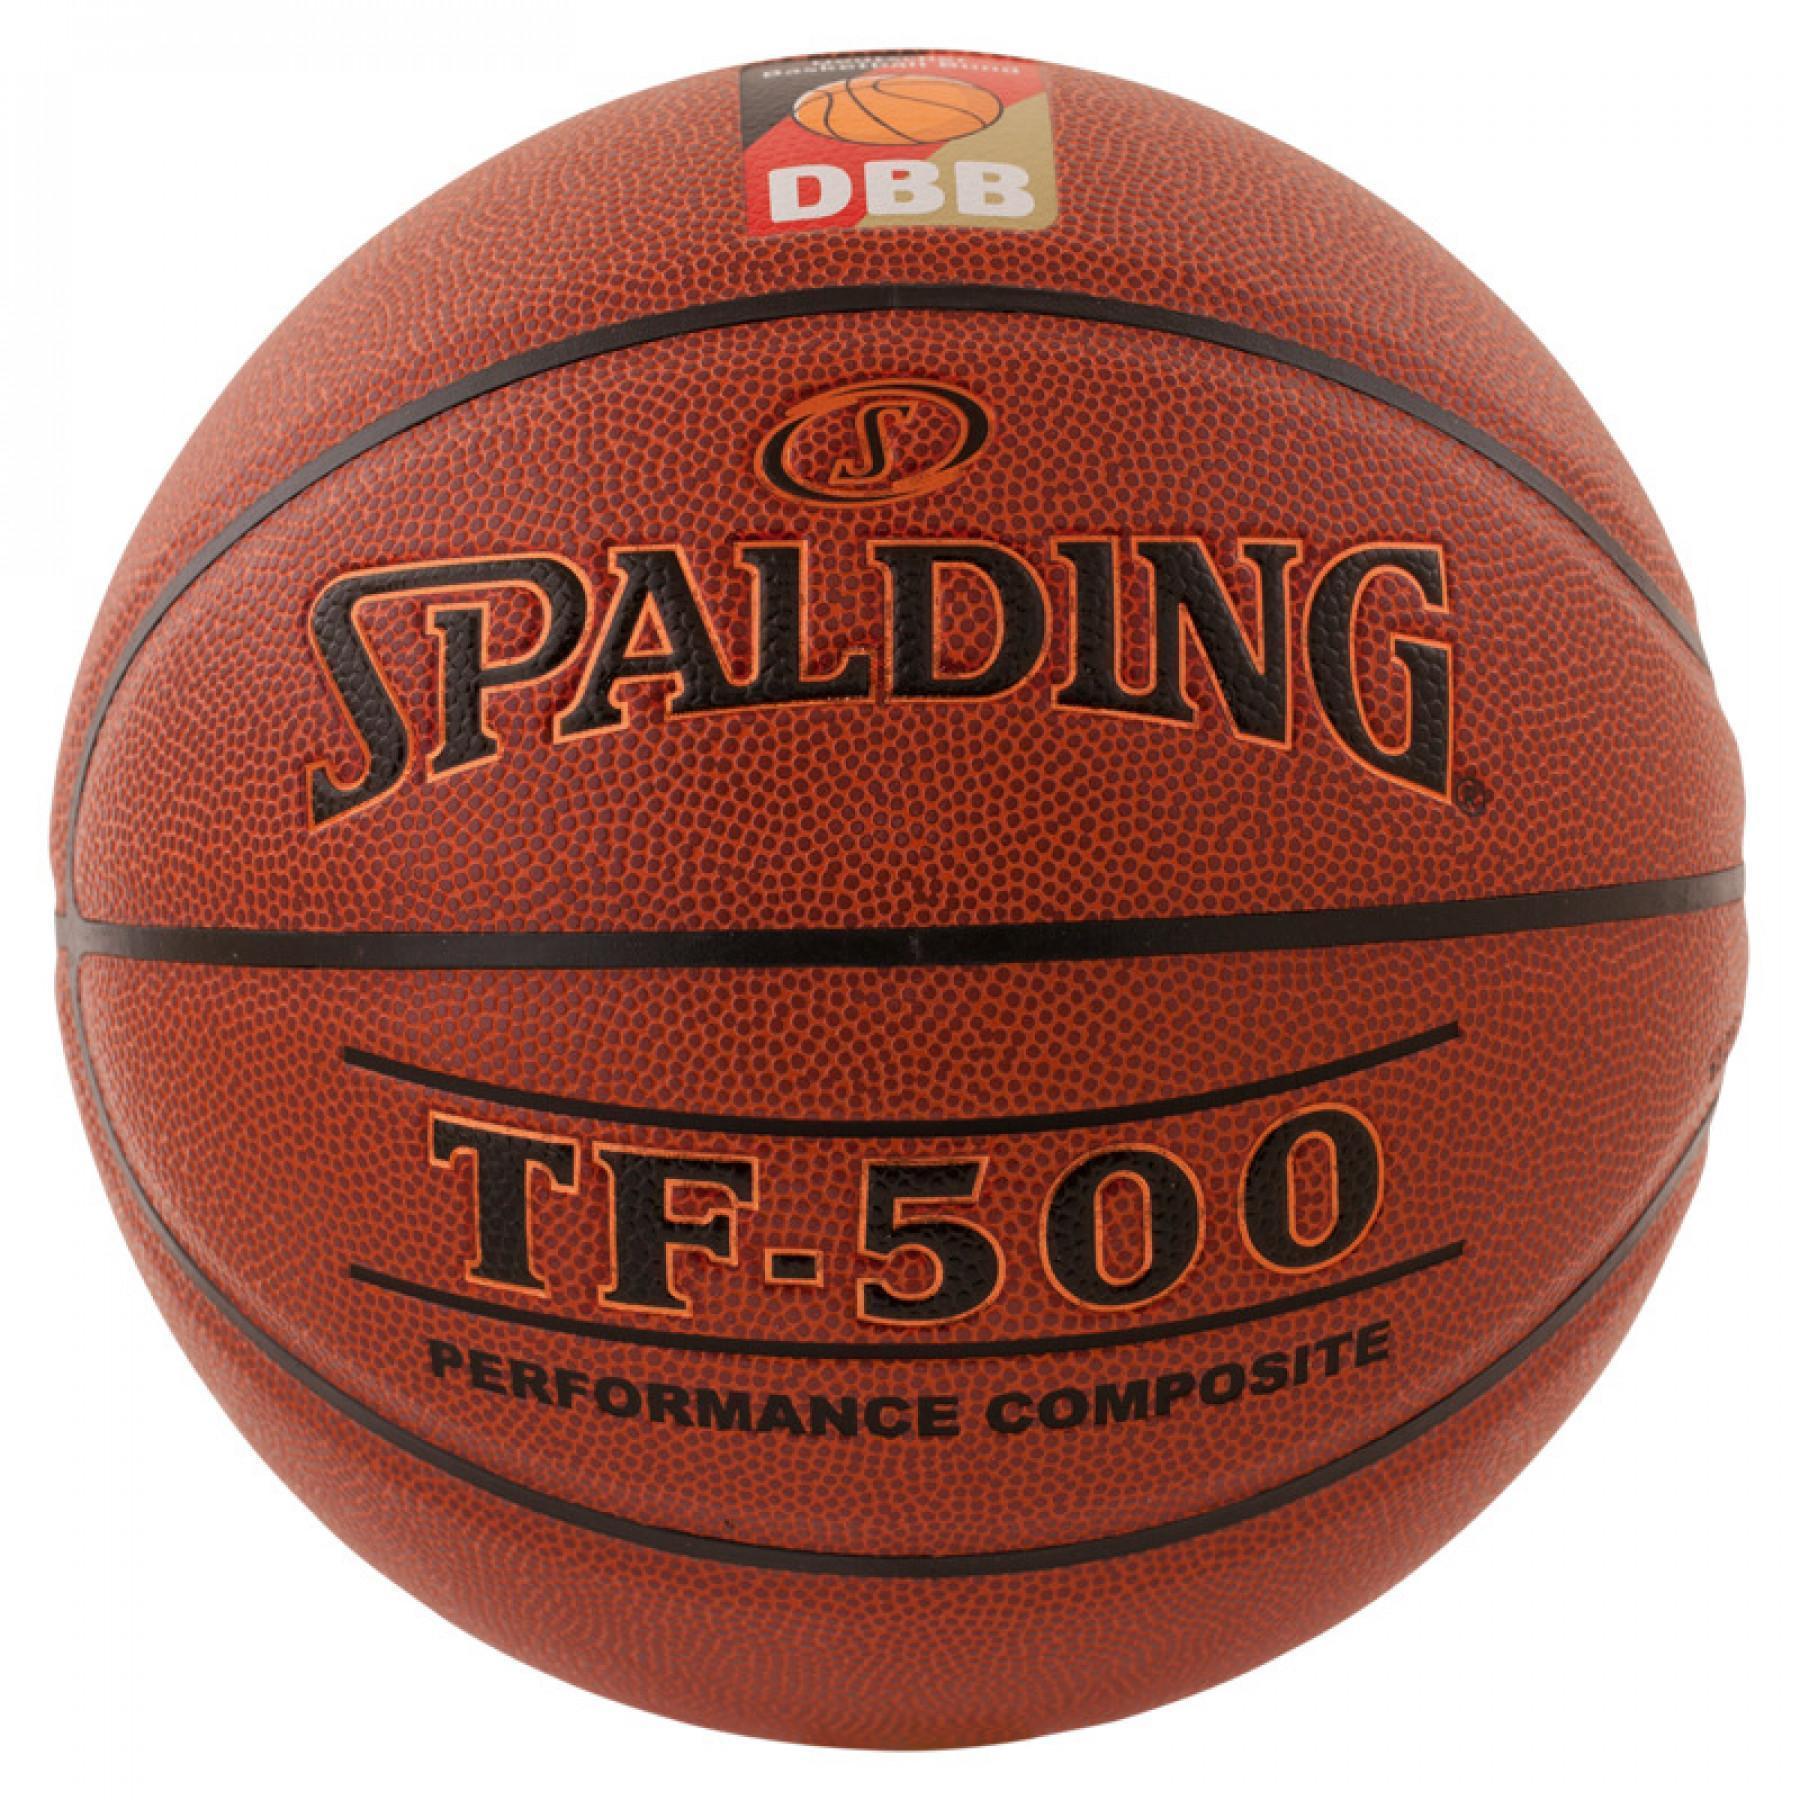 Ballong Spalding DBB Tf500 (74-591z)